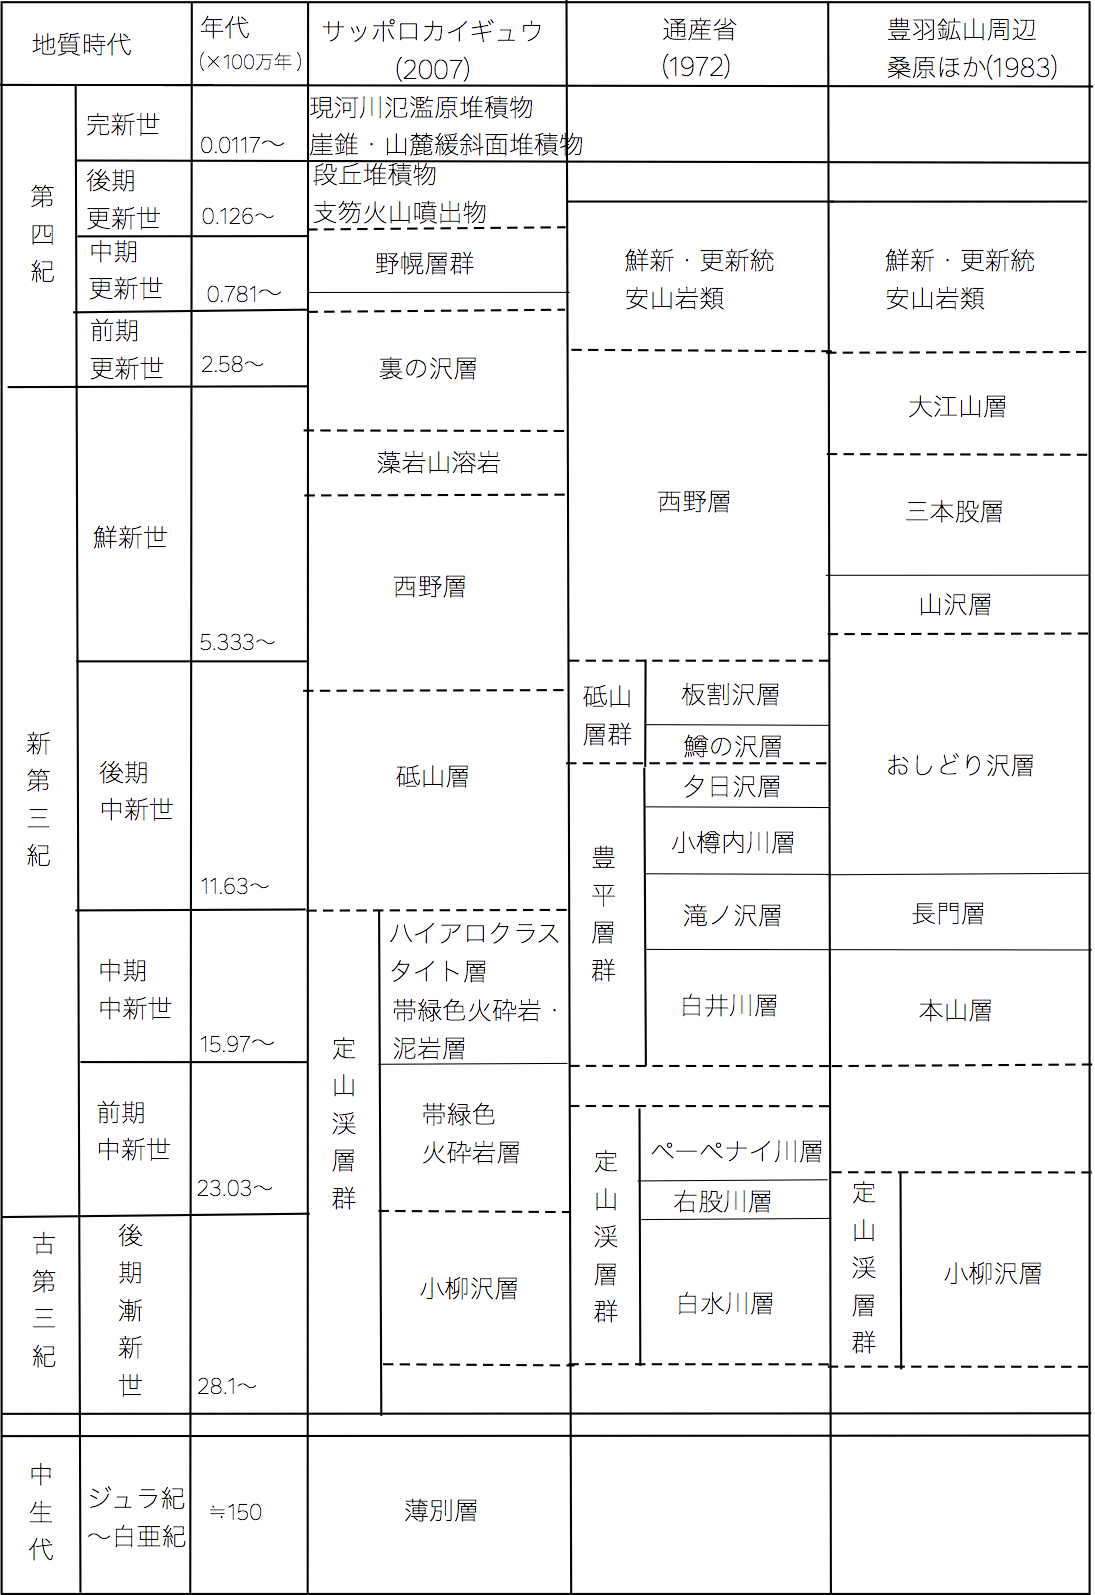 図1-2　札幌西部山地の層序表.jpg